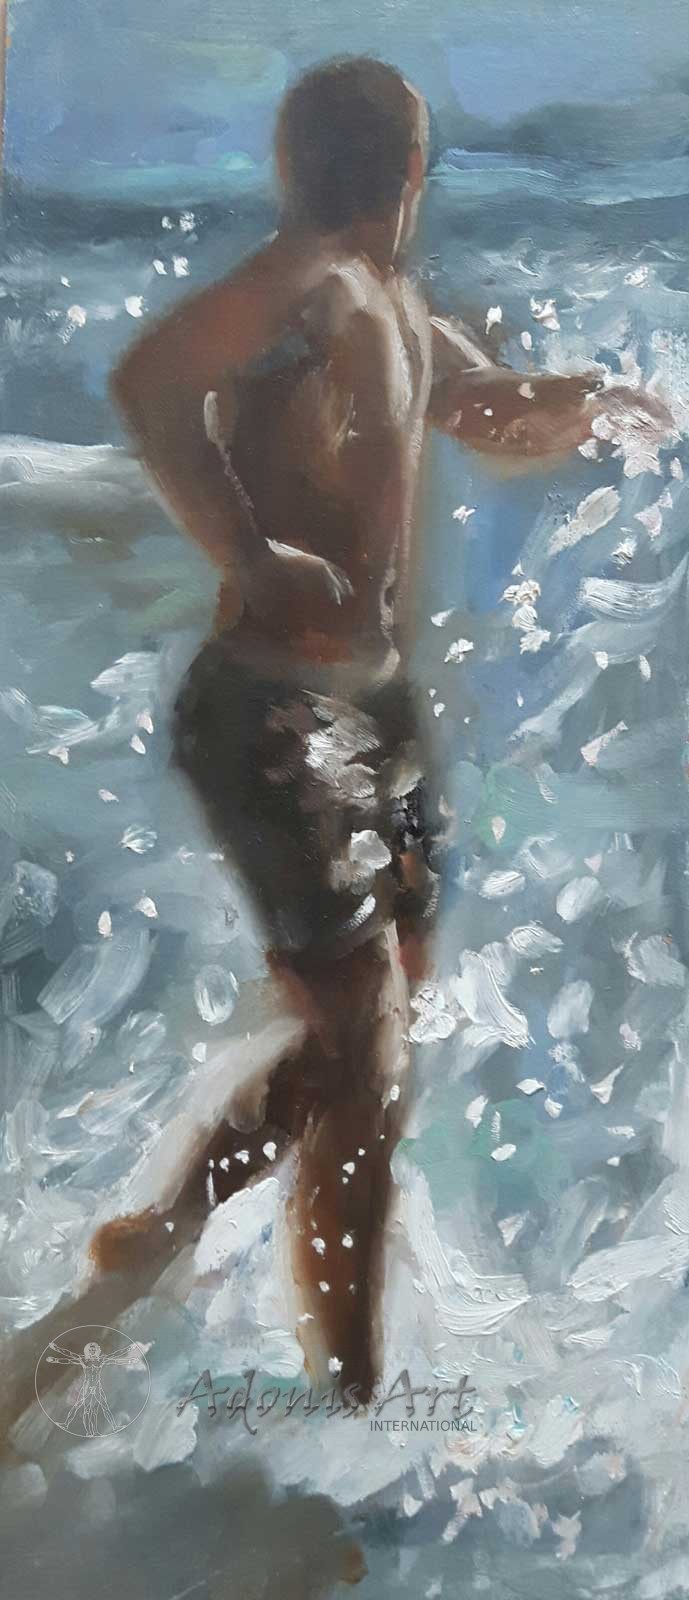 'Splash' by David Ambrose